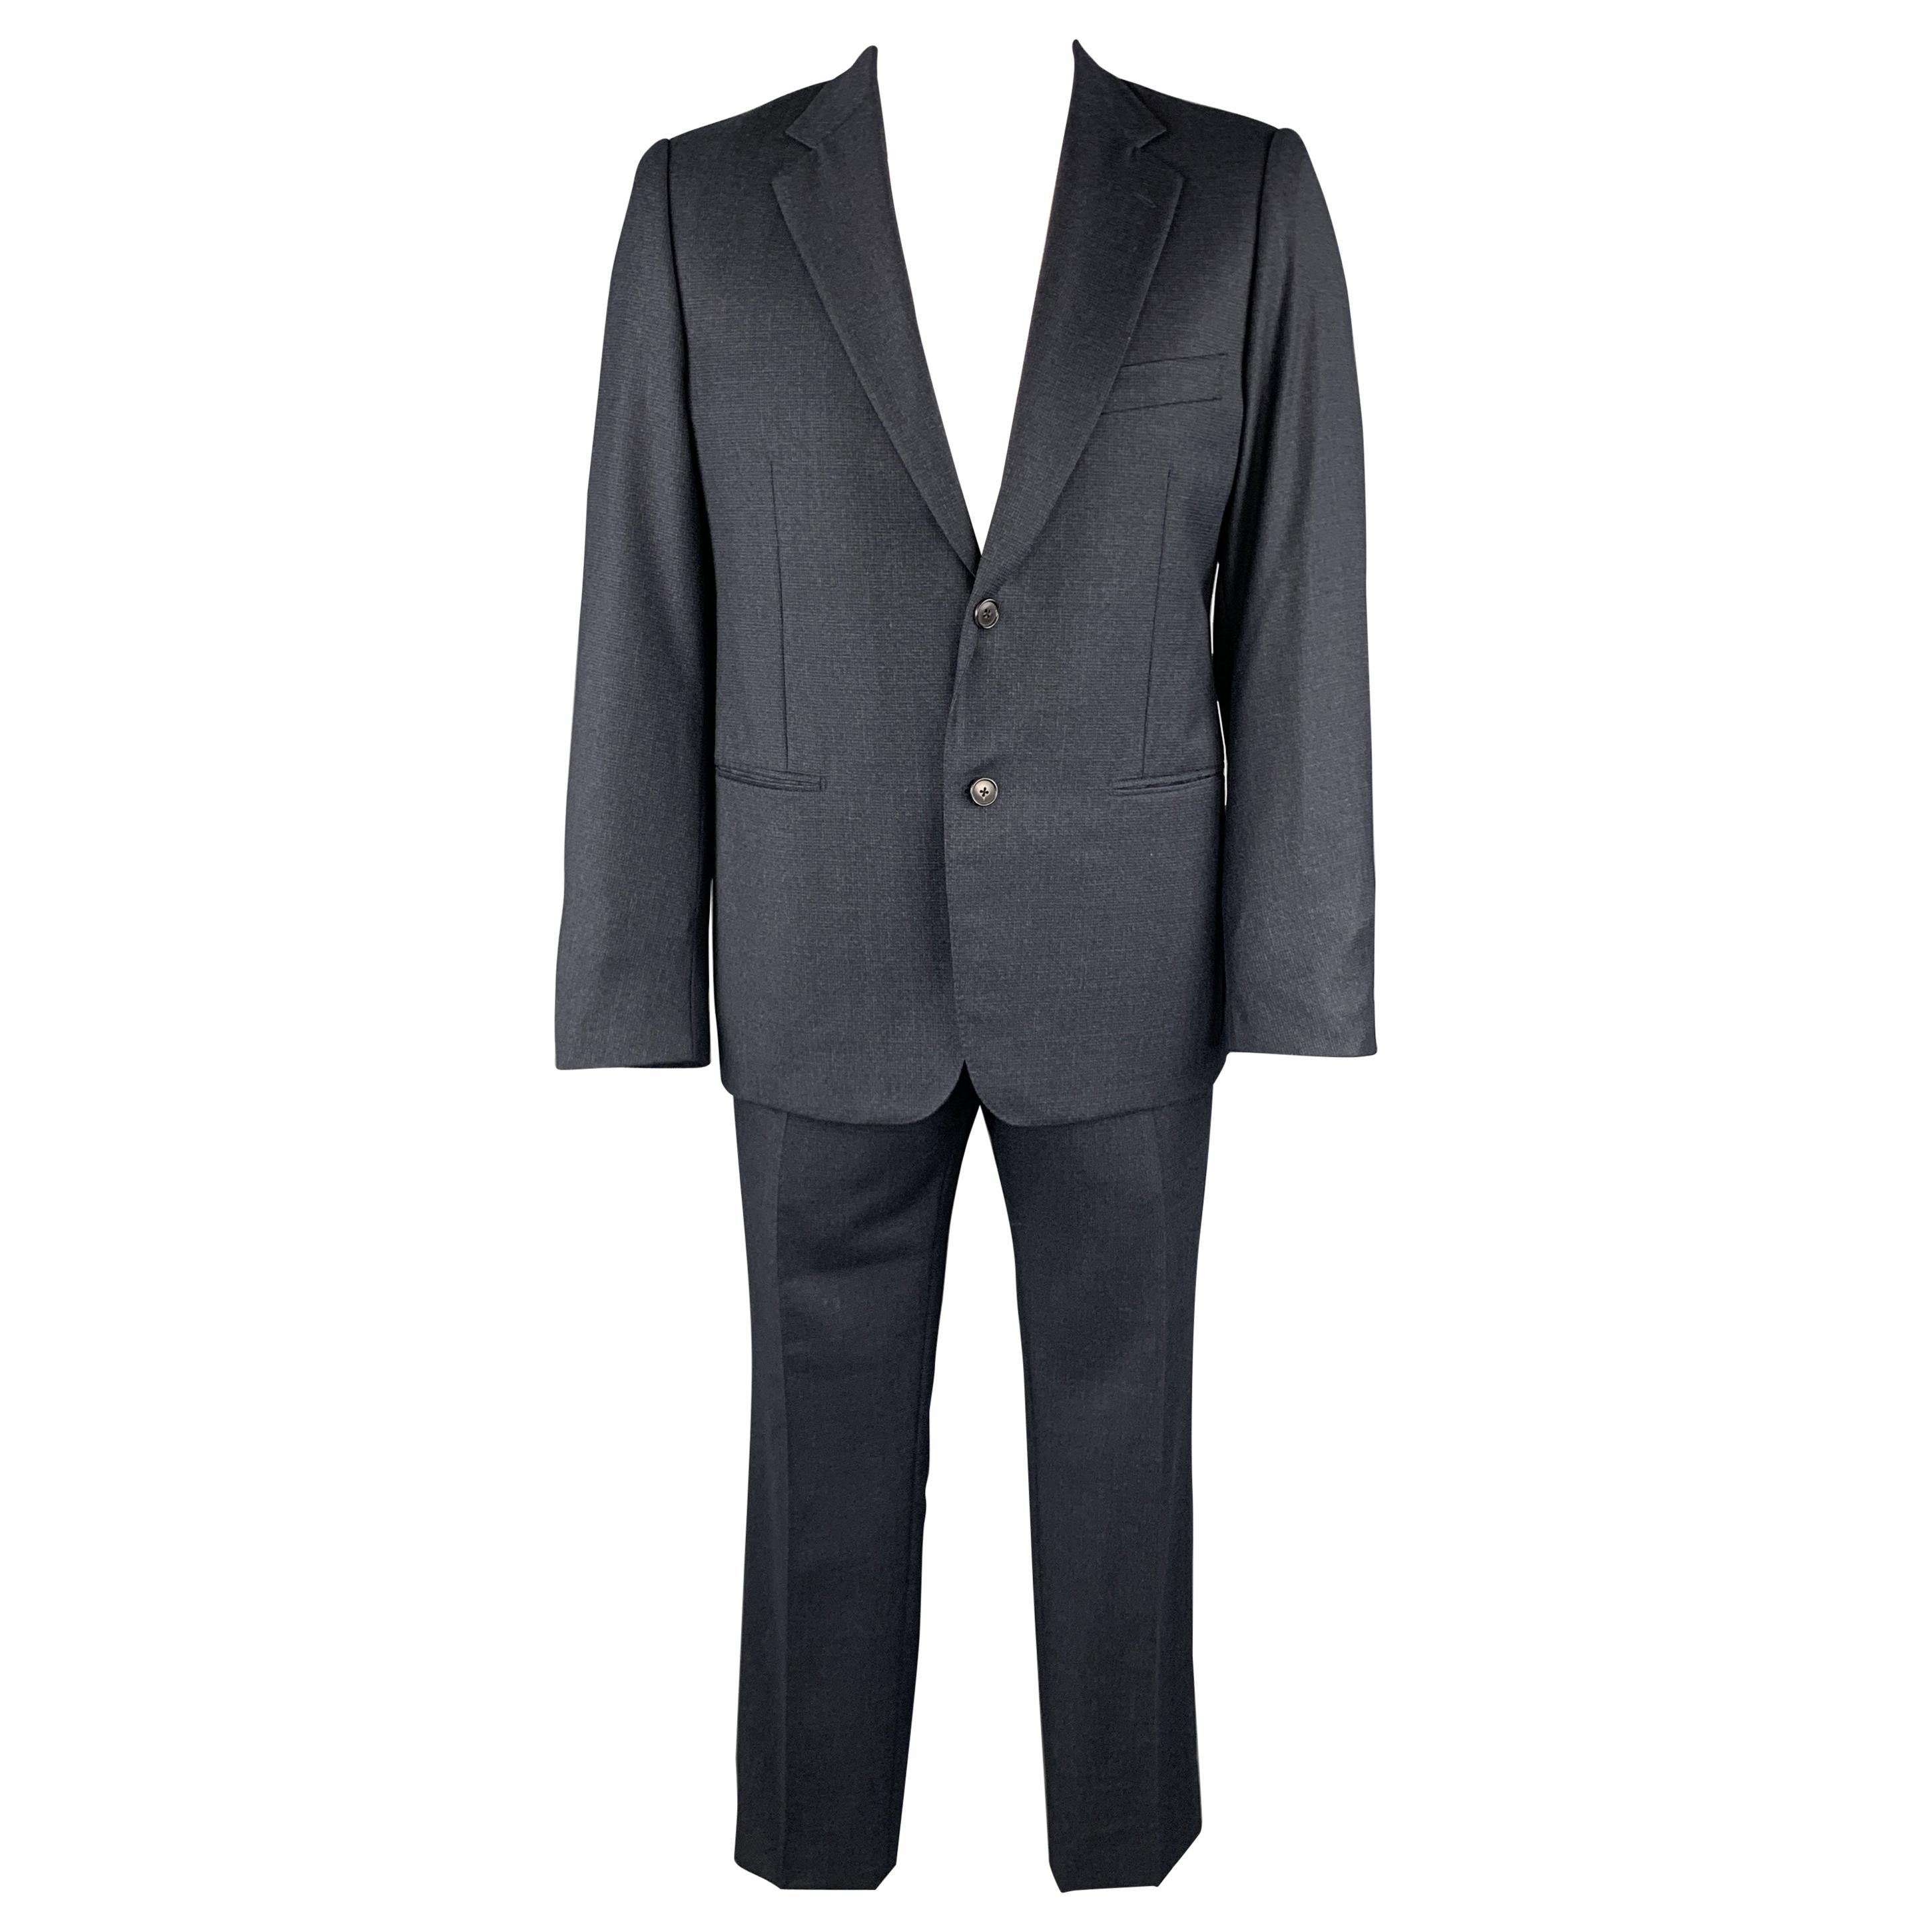 BELVEST Size 44 Navy Plaid Wool Notch Lape Suit